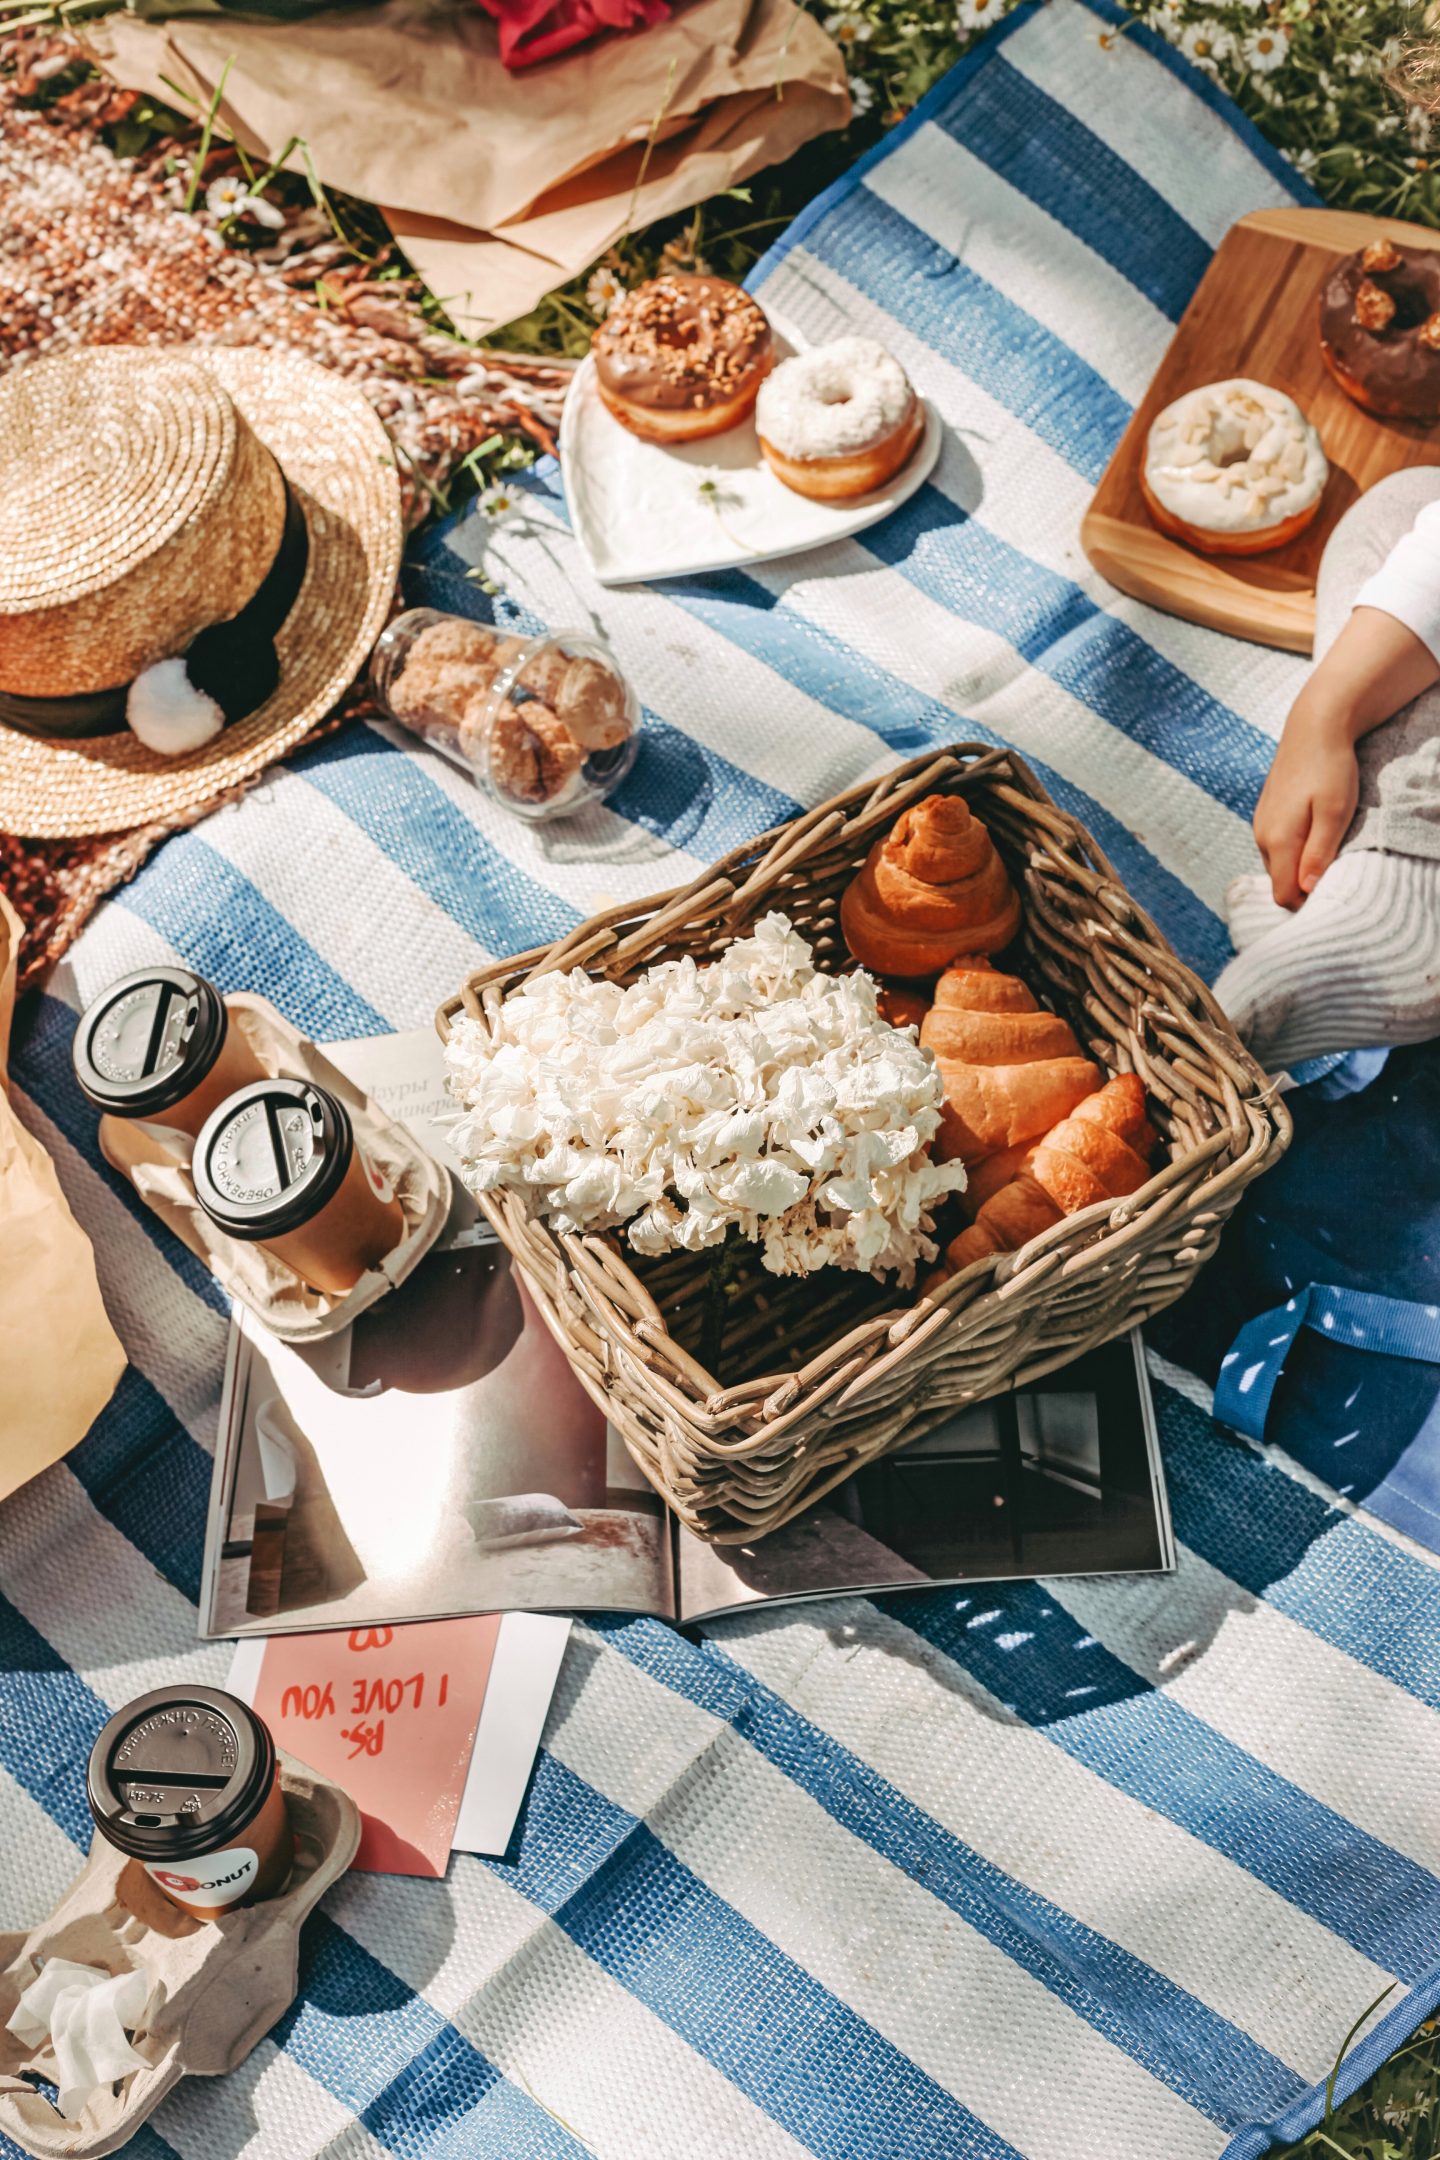 picnic date - unique gift idea